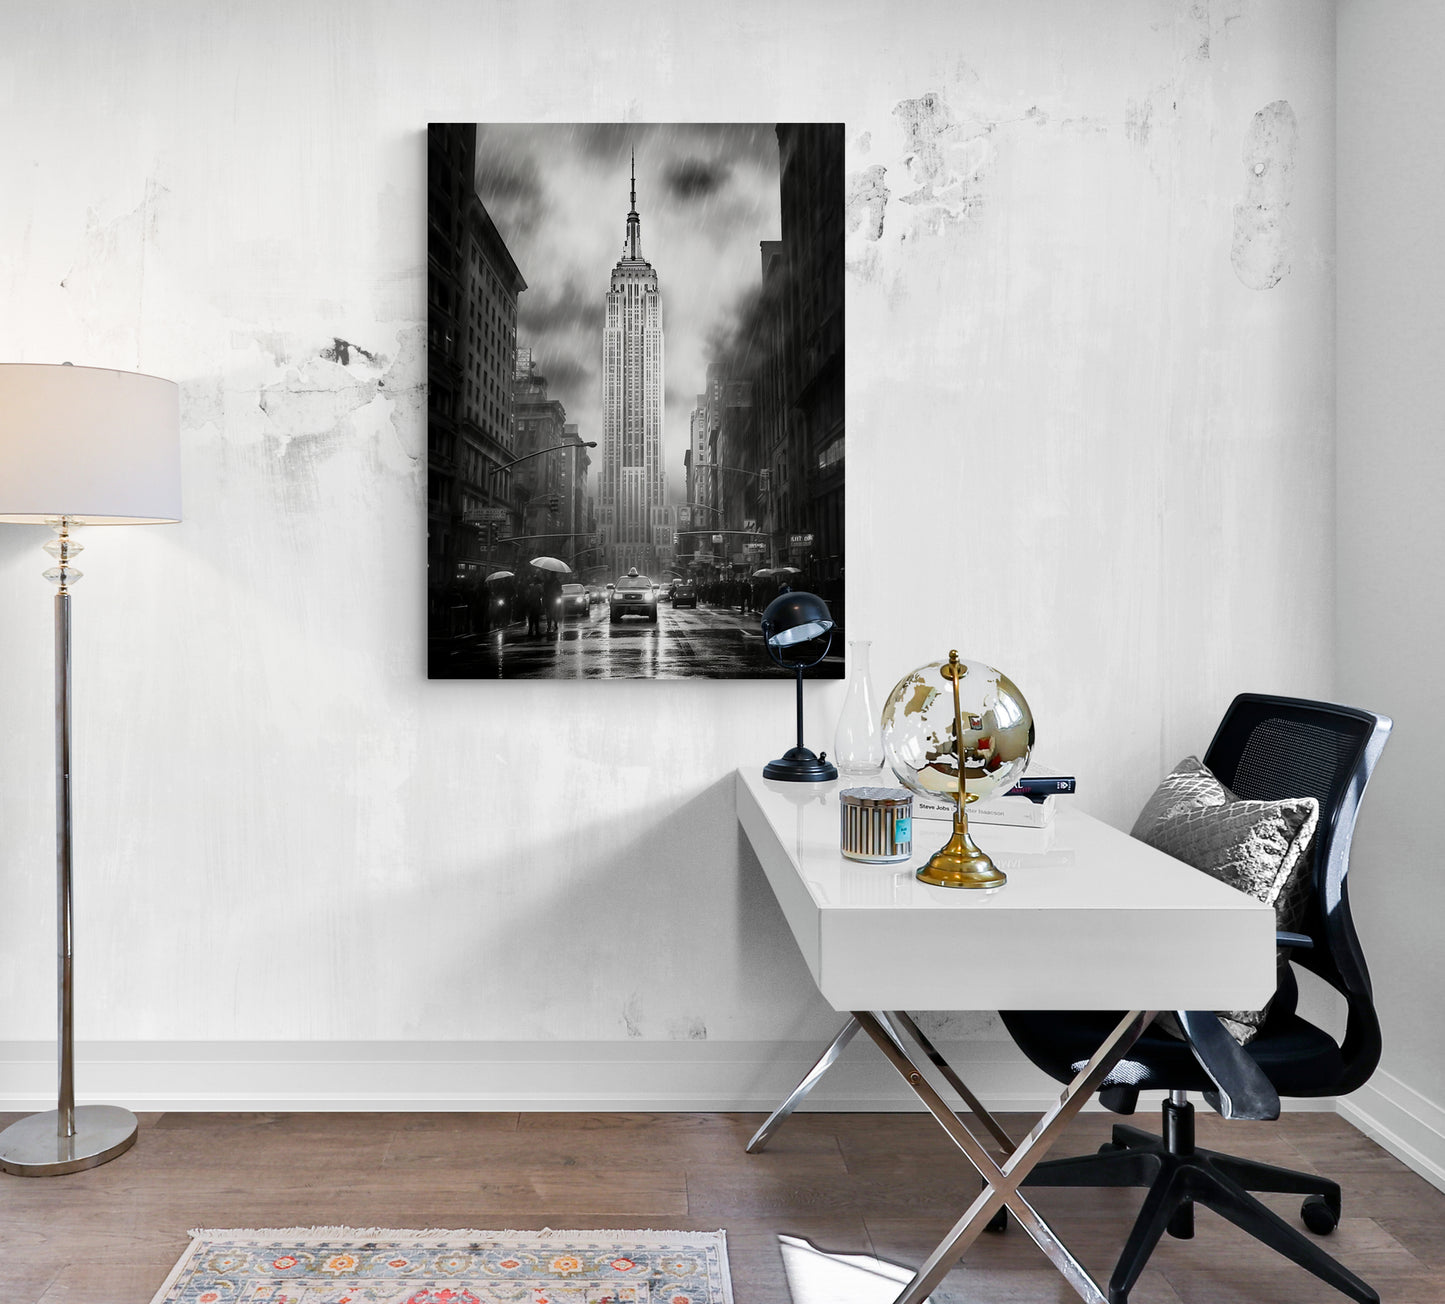 Toile photo de New York en noir et blanc, ajoutant une touche urbaine à un bureau design moderne